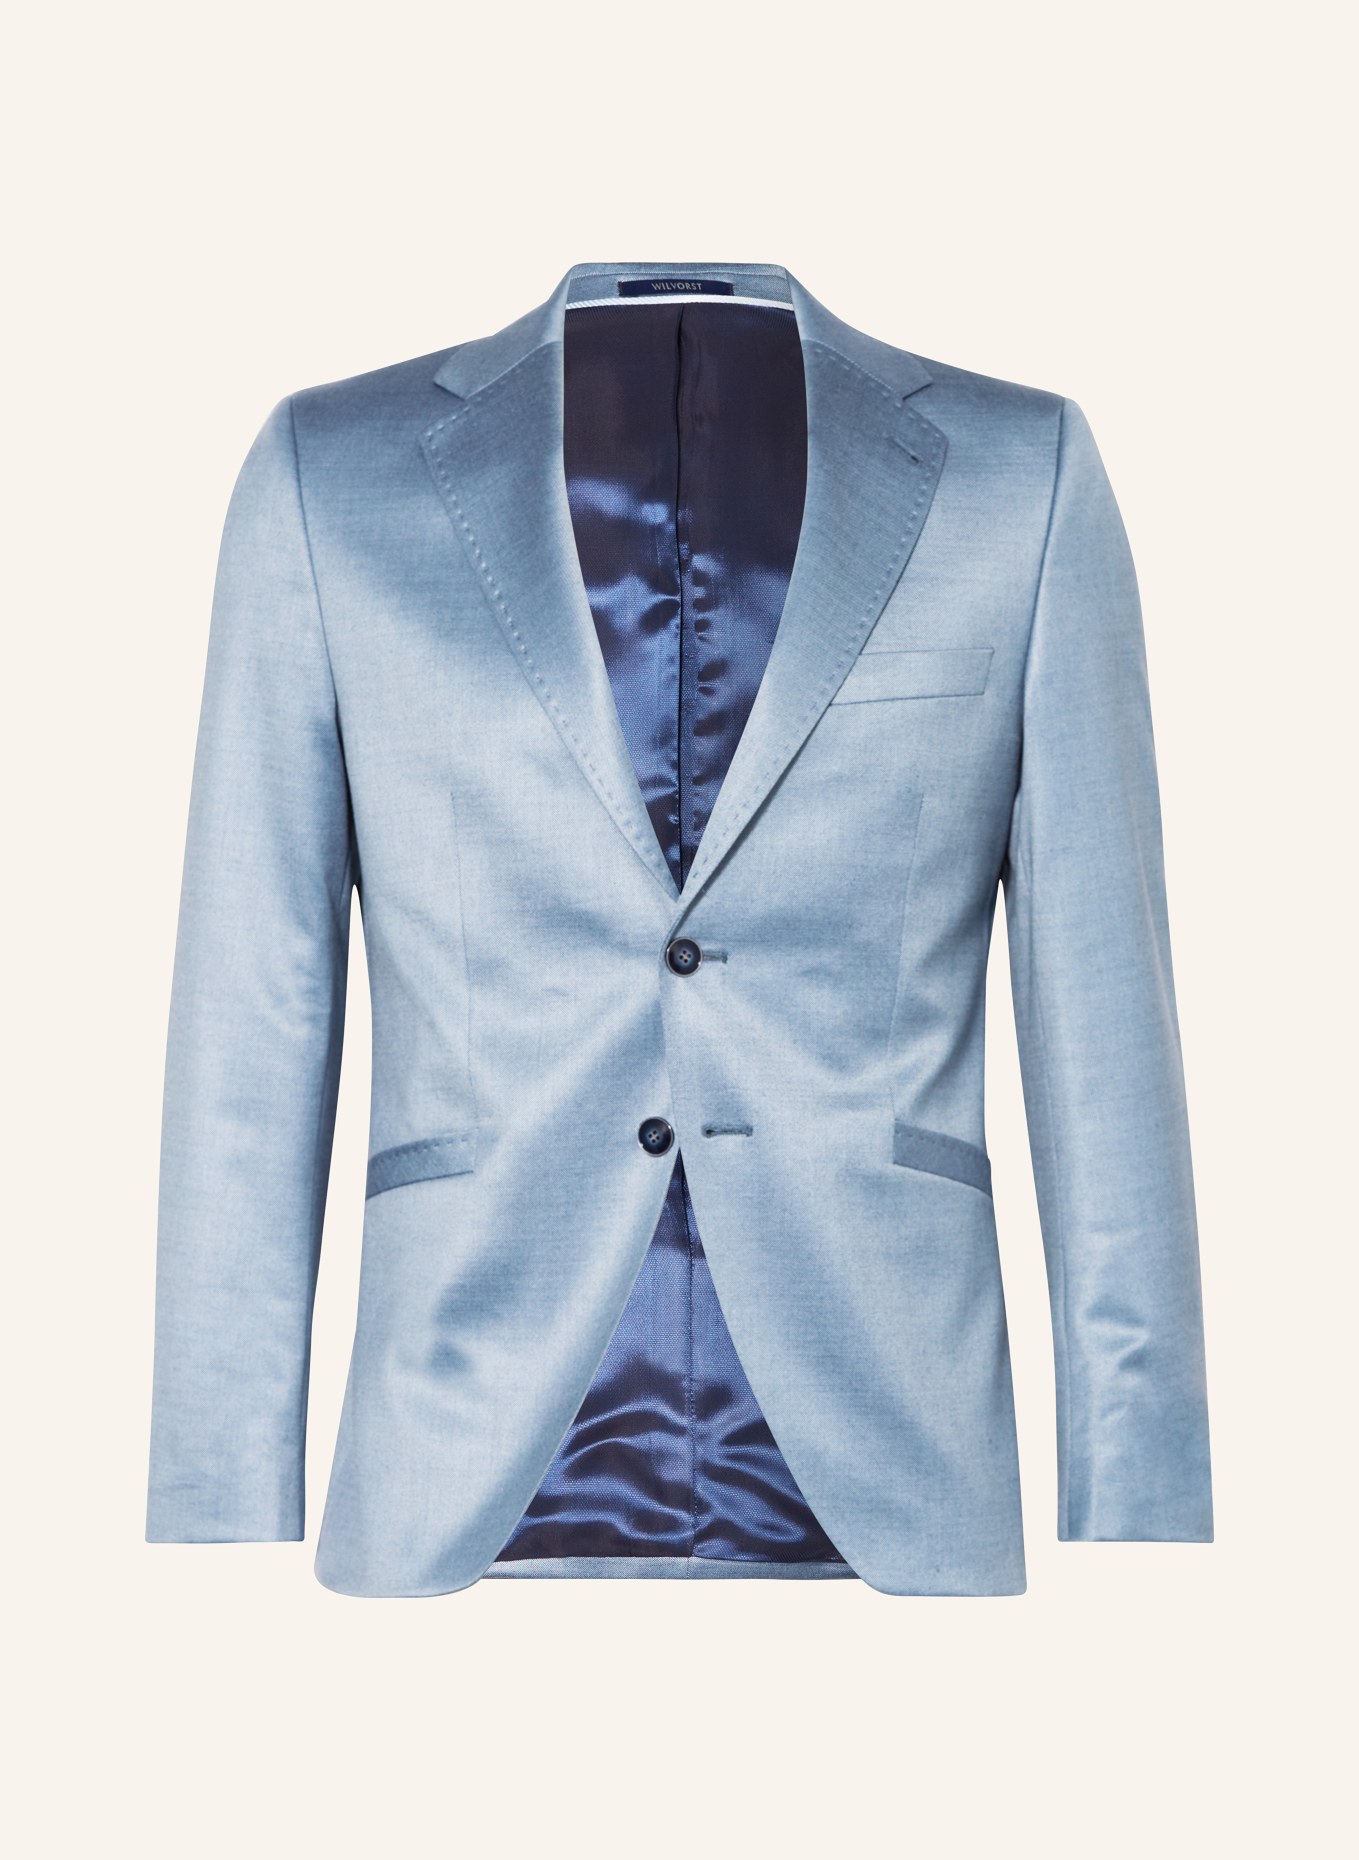 WILVORST Suit jacket extra slim fit, Color: LIGHT BLUE (Image 1)